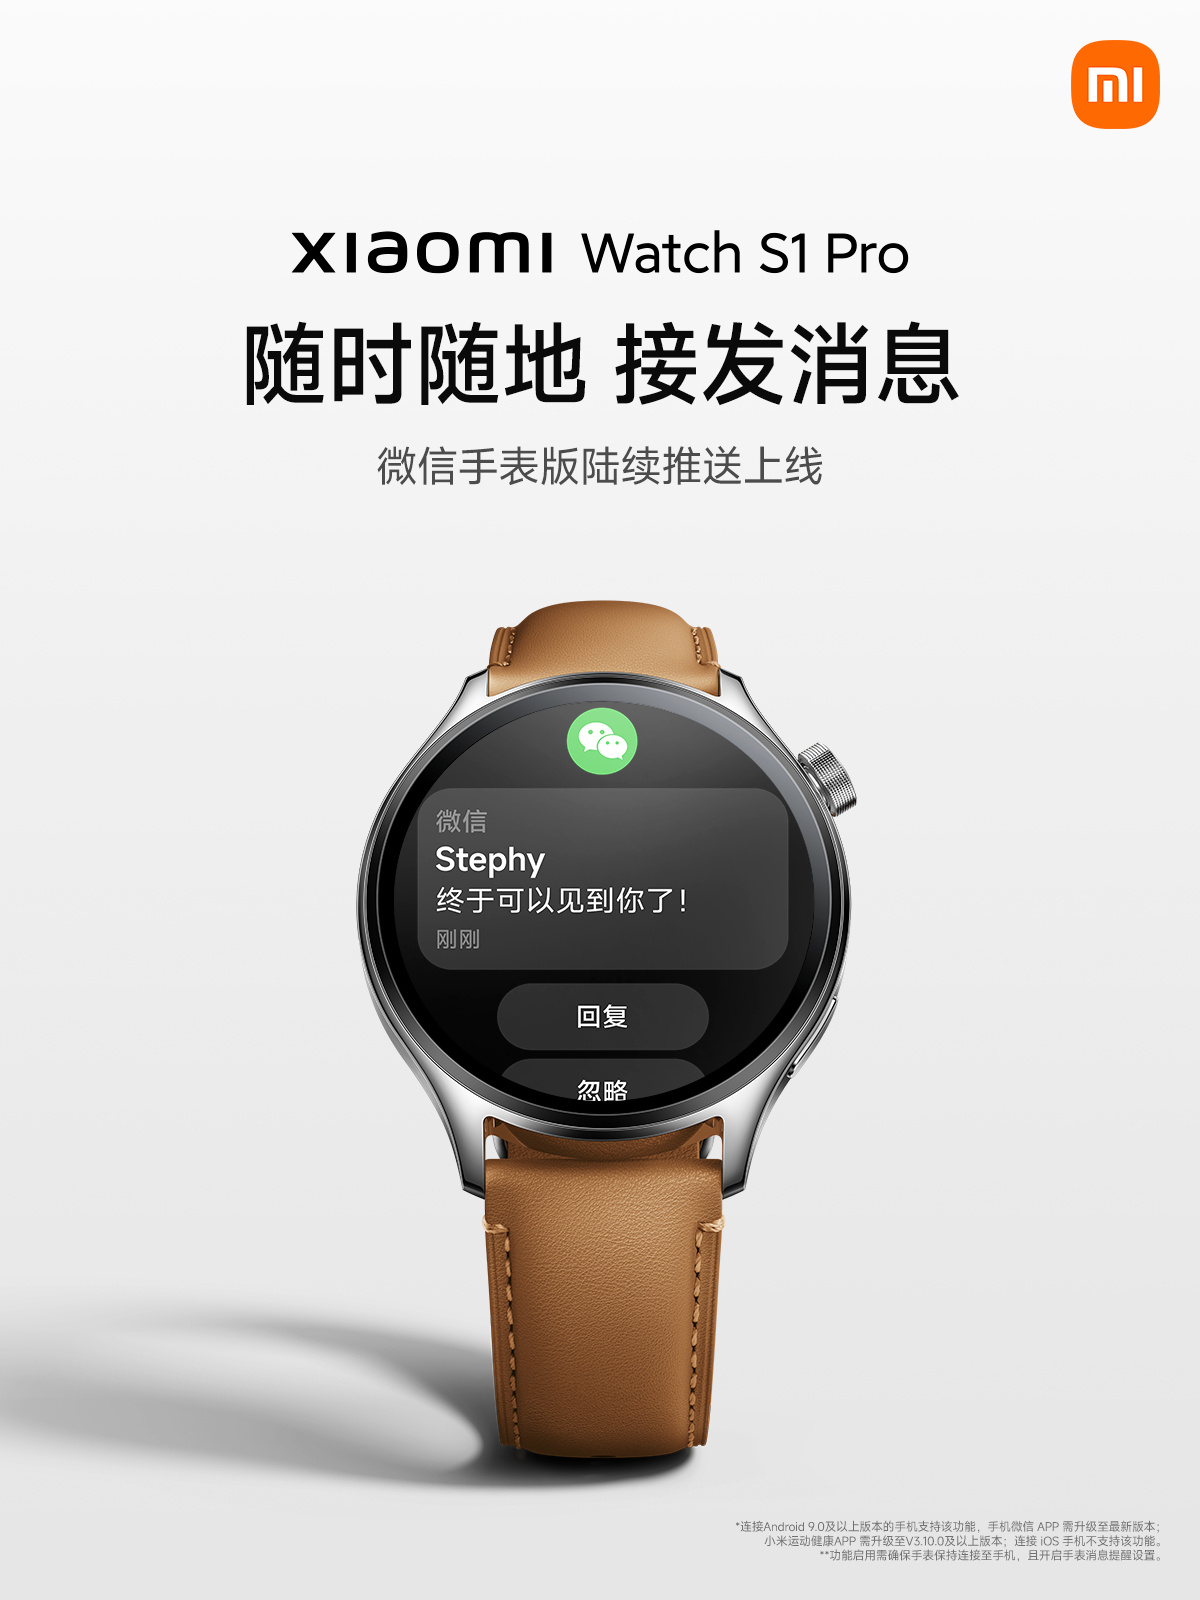 smartwatch Xiaomi Watch S1 Pro nowa aplikacja WeChat